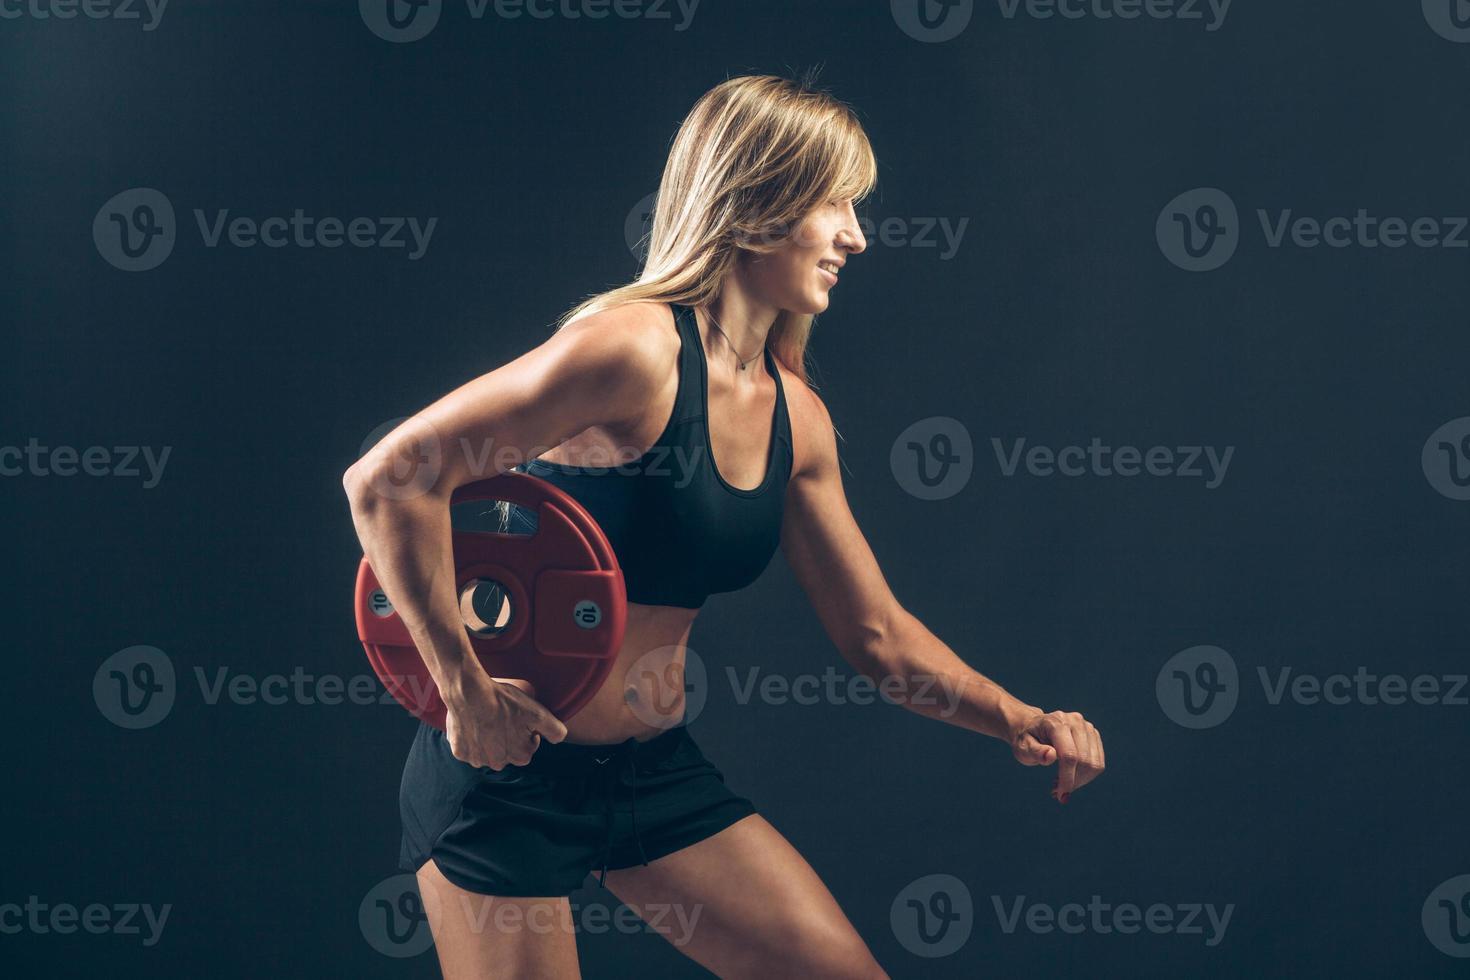 fitness vrouw die gewichtheffen doet door zware gewichten op te heffen foto